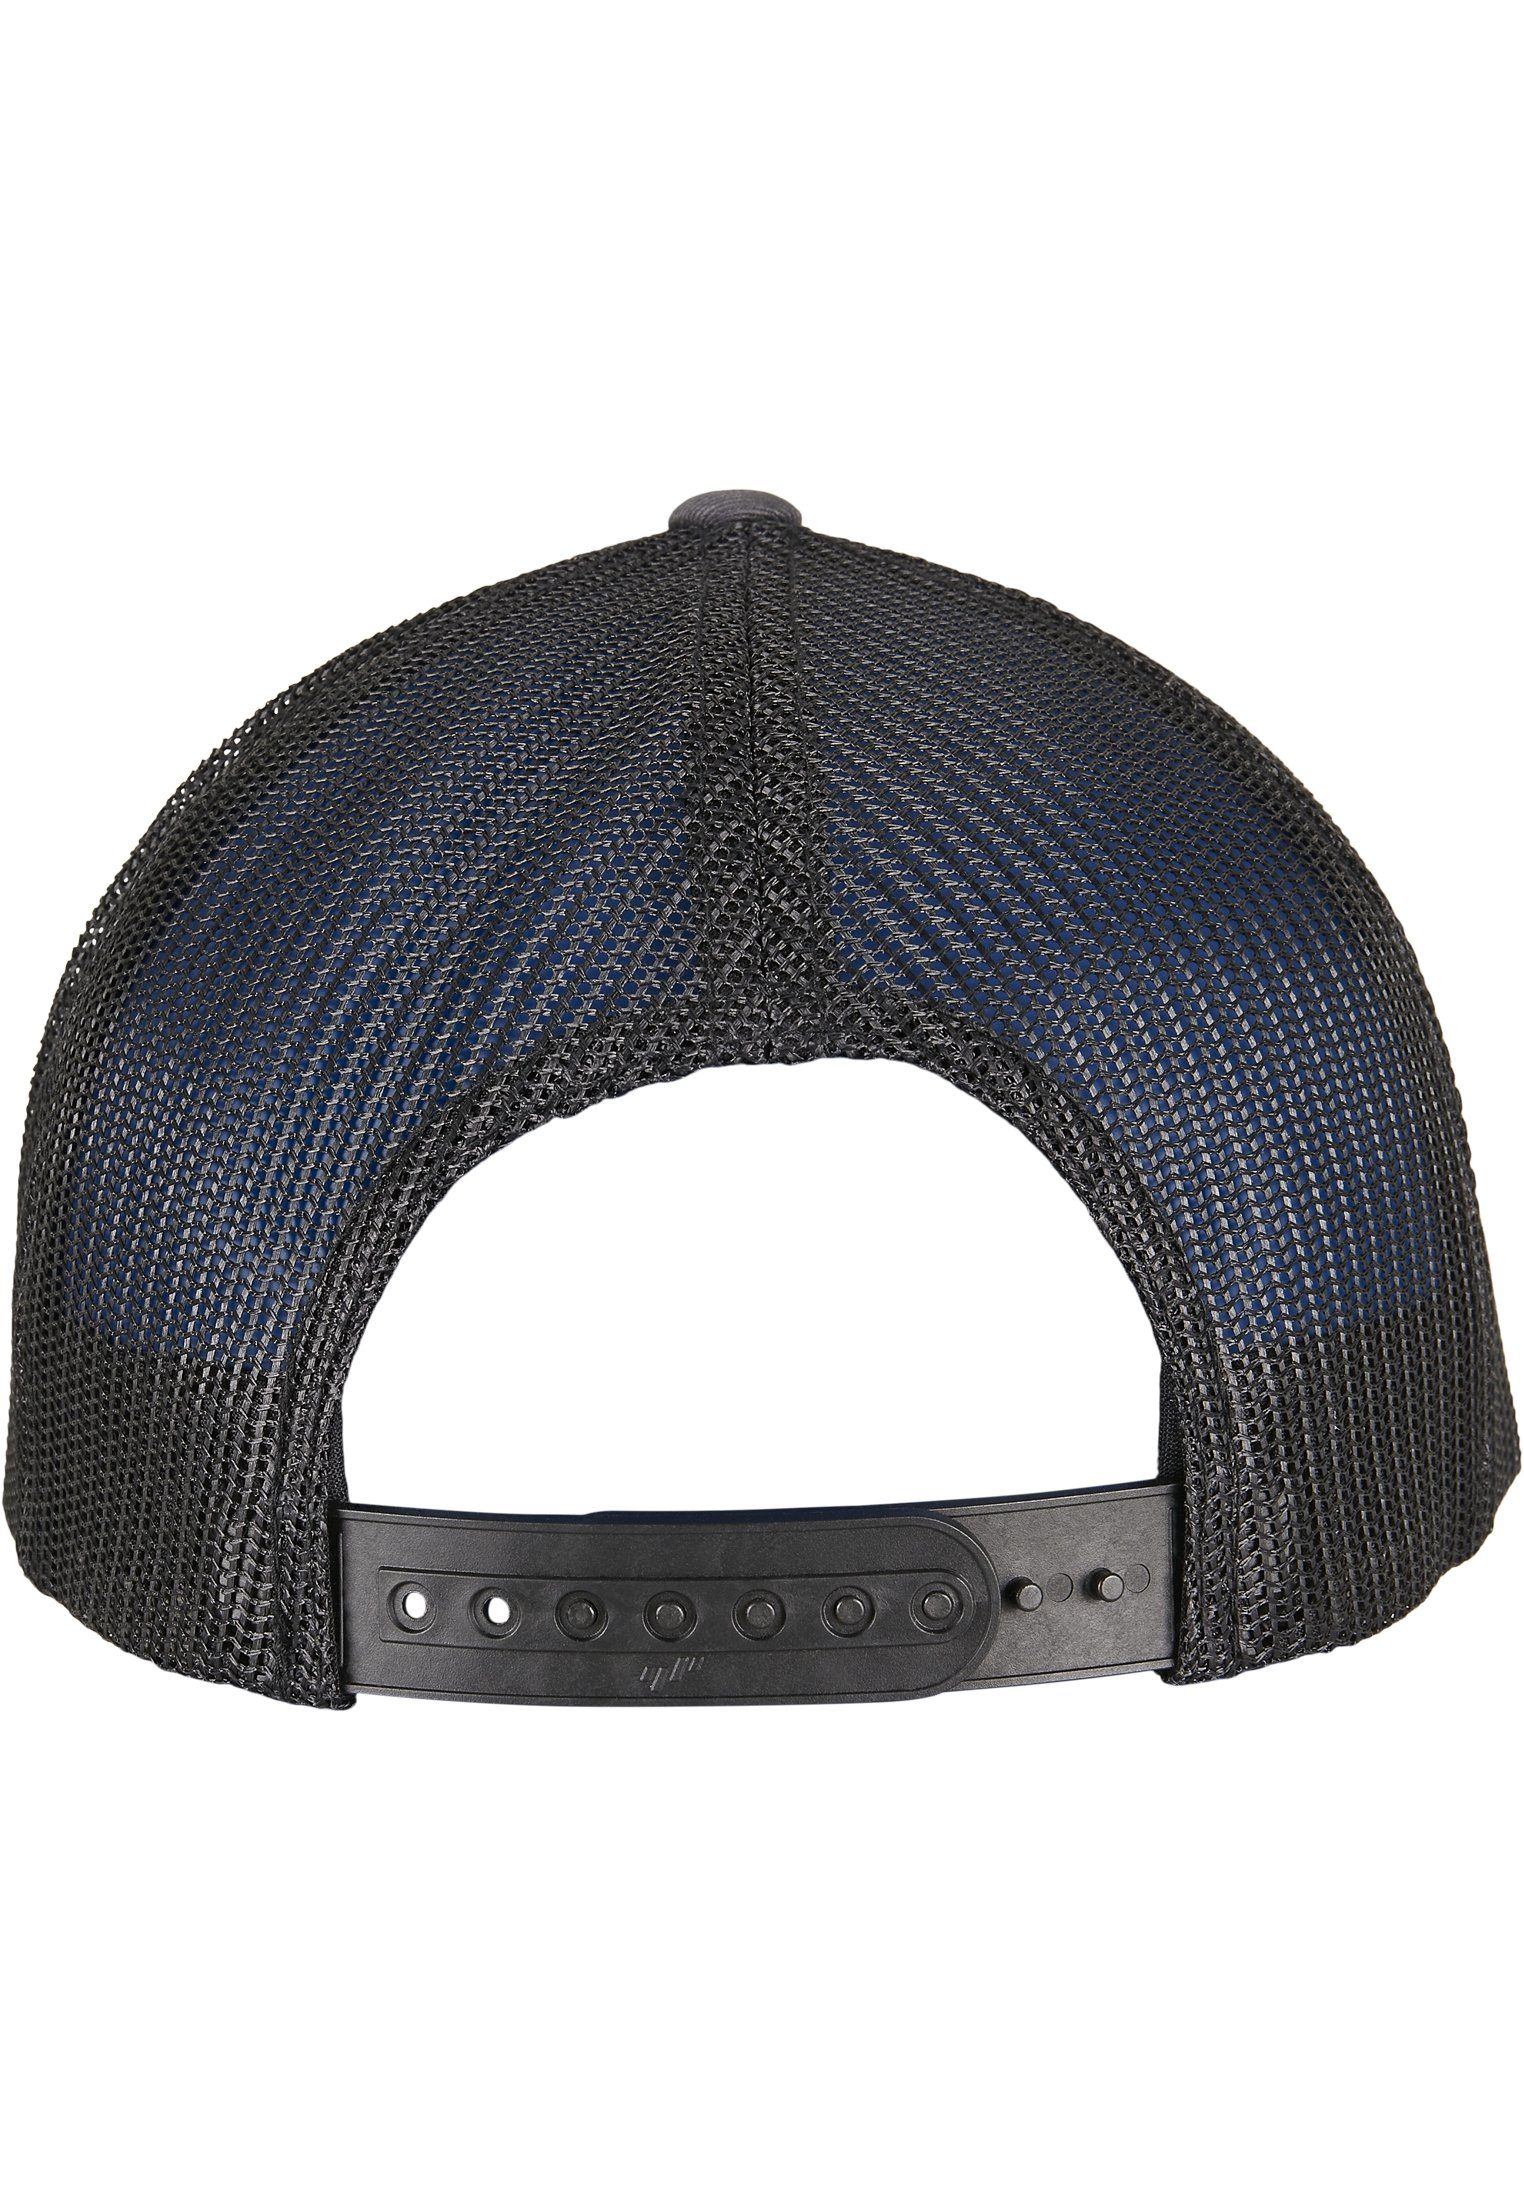 YP charcoal/black Flexfit RETRO Cap Flex CLASSICS CAP RECYCLED TRUCKER 2-TONE Caps